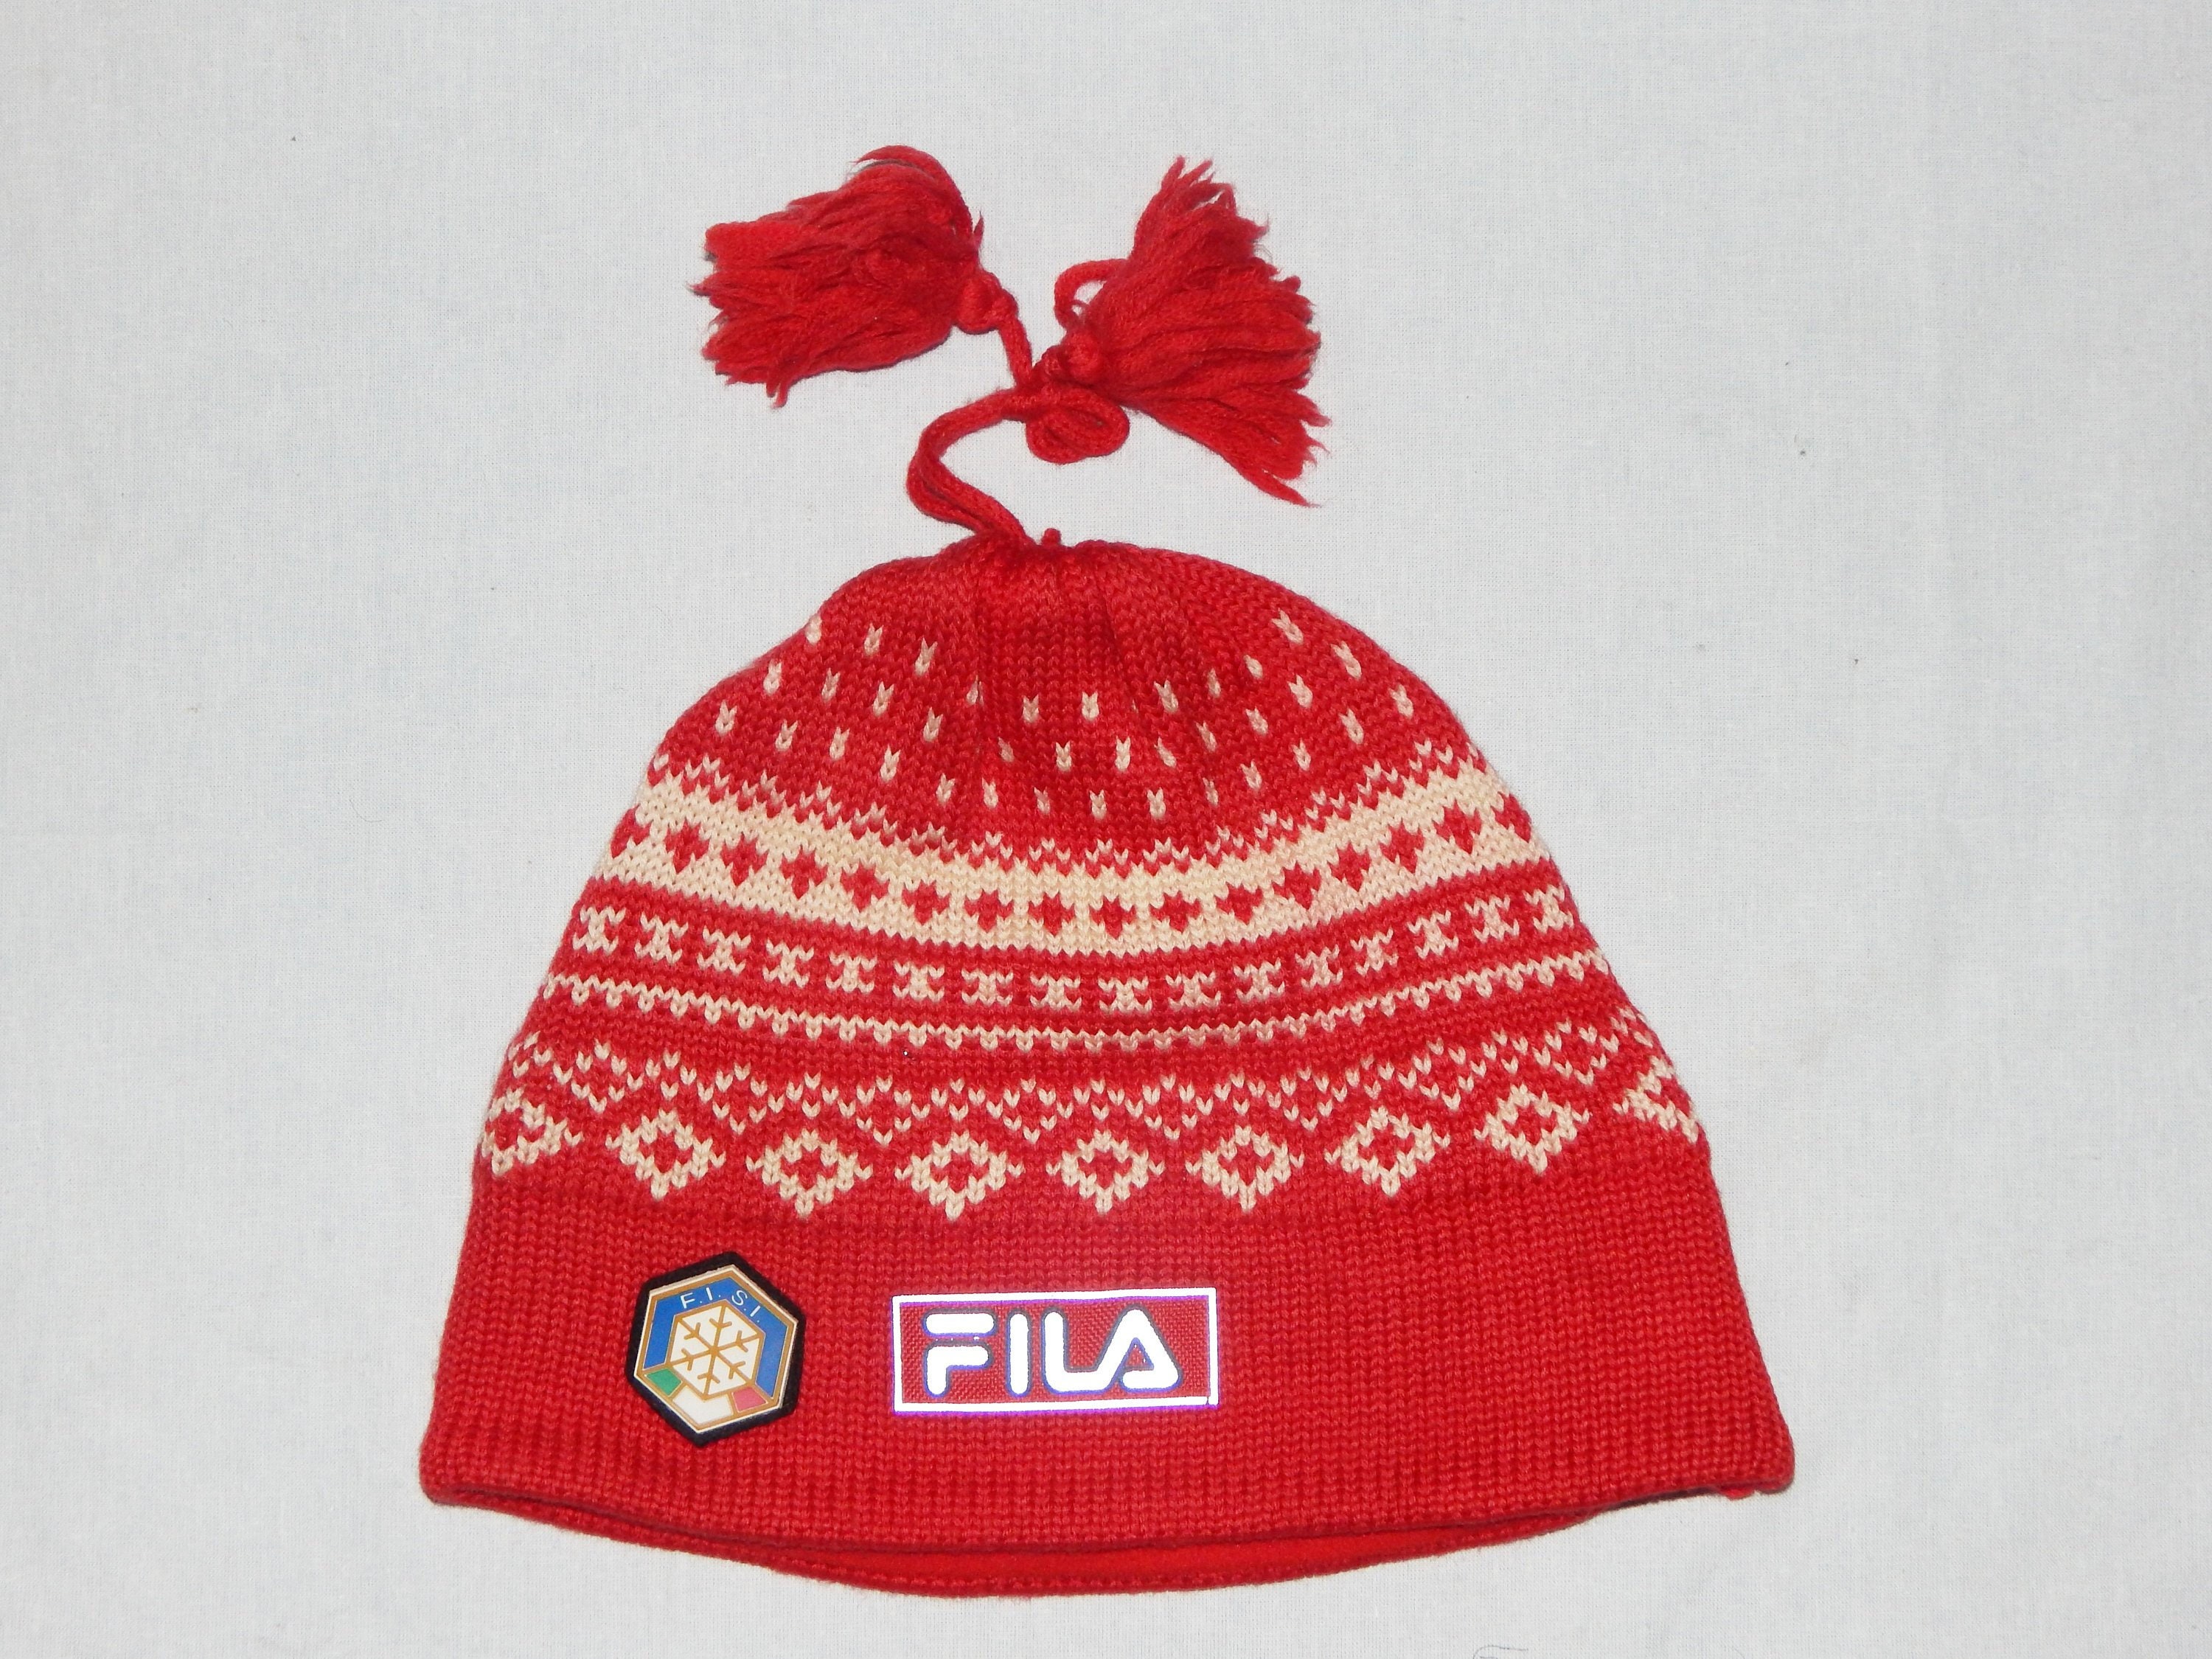 FILA FISI Italia ski Team Rare Vintage 80s,Ski Wool Hat Size L/XL,Red /white